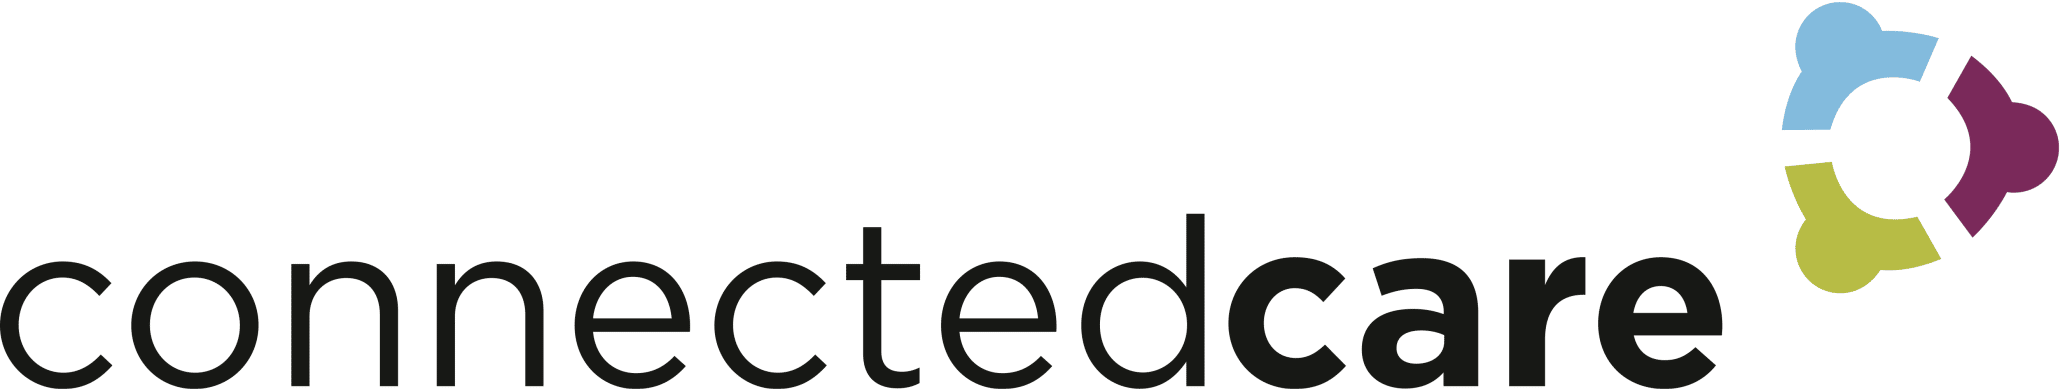 Connectedcare Logo